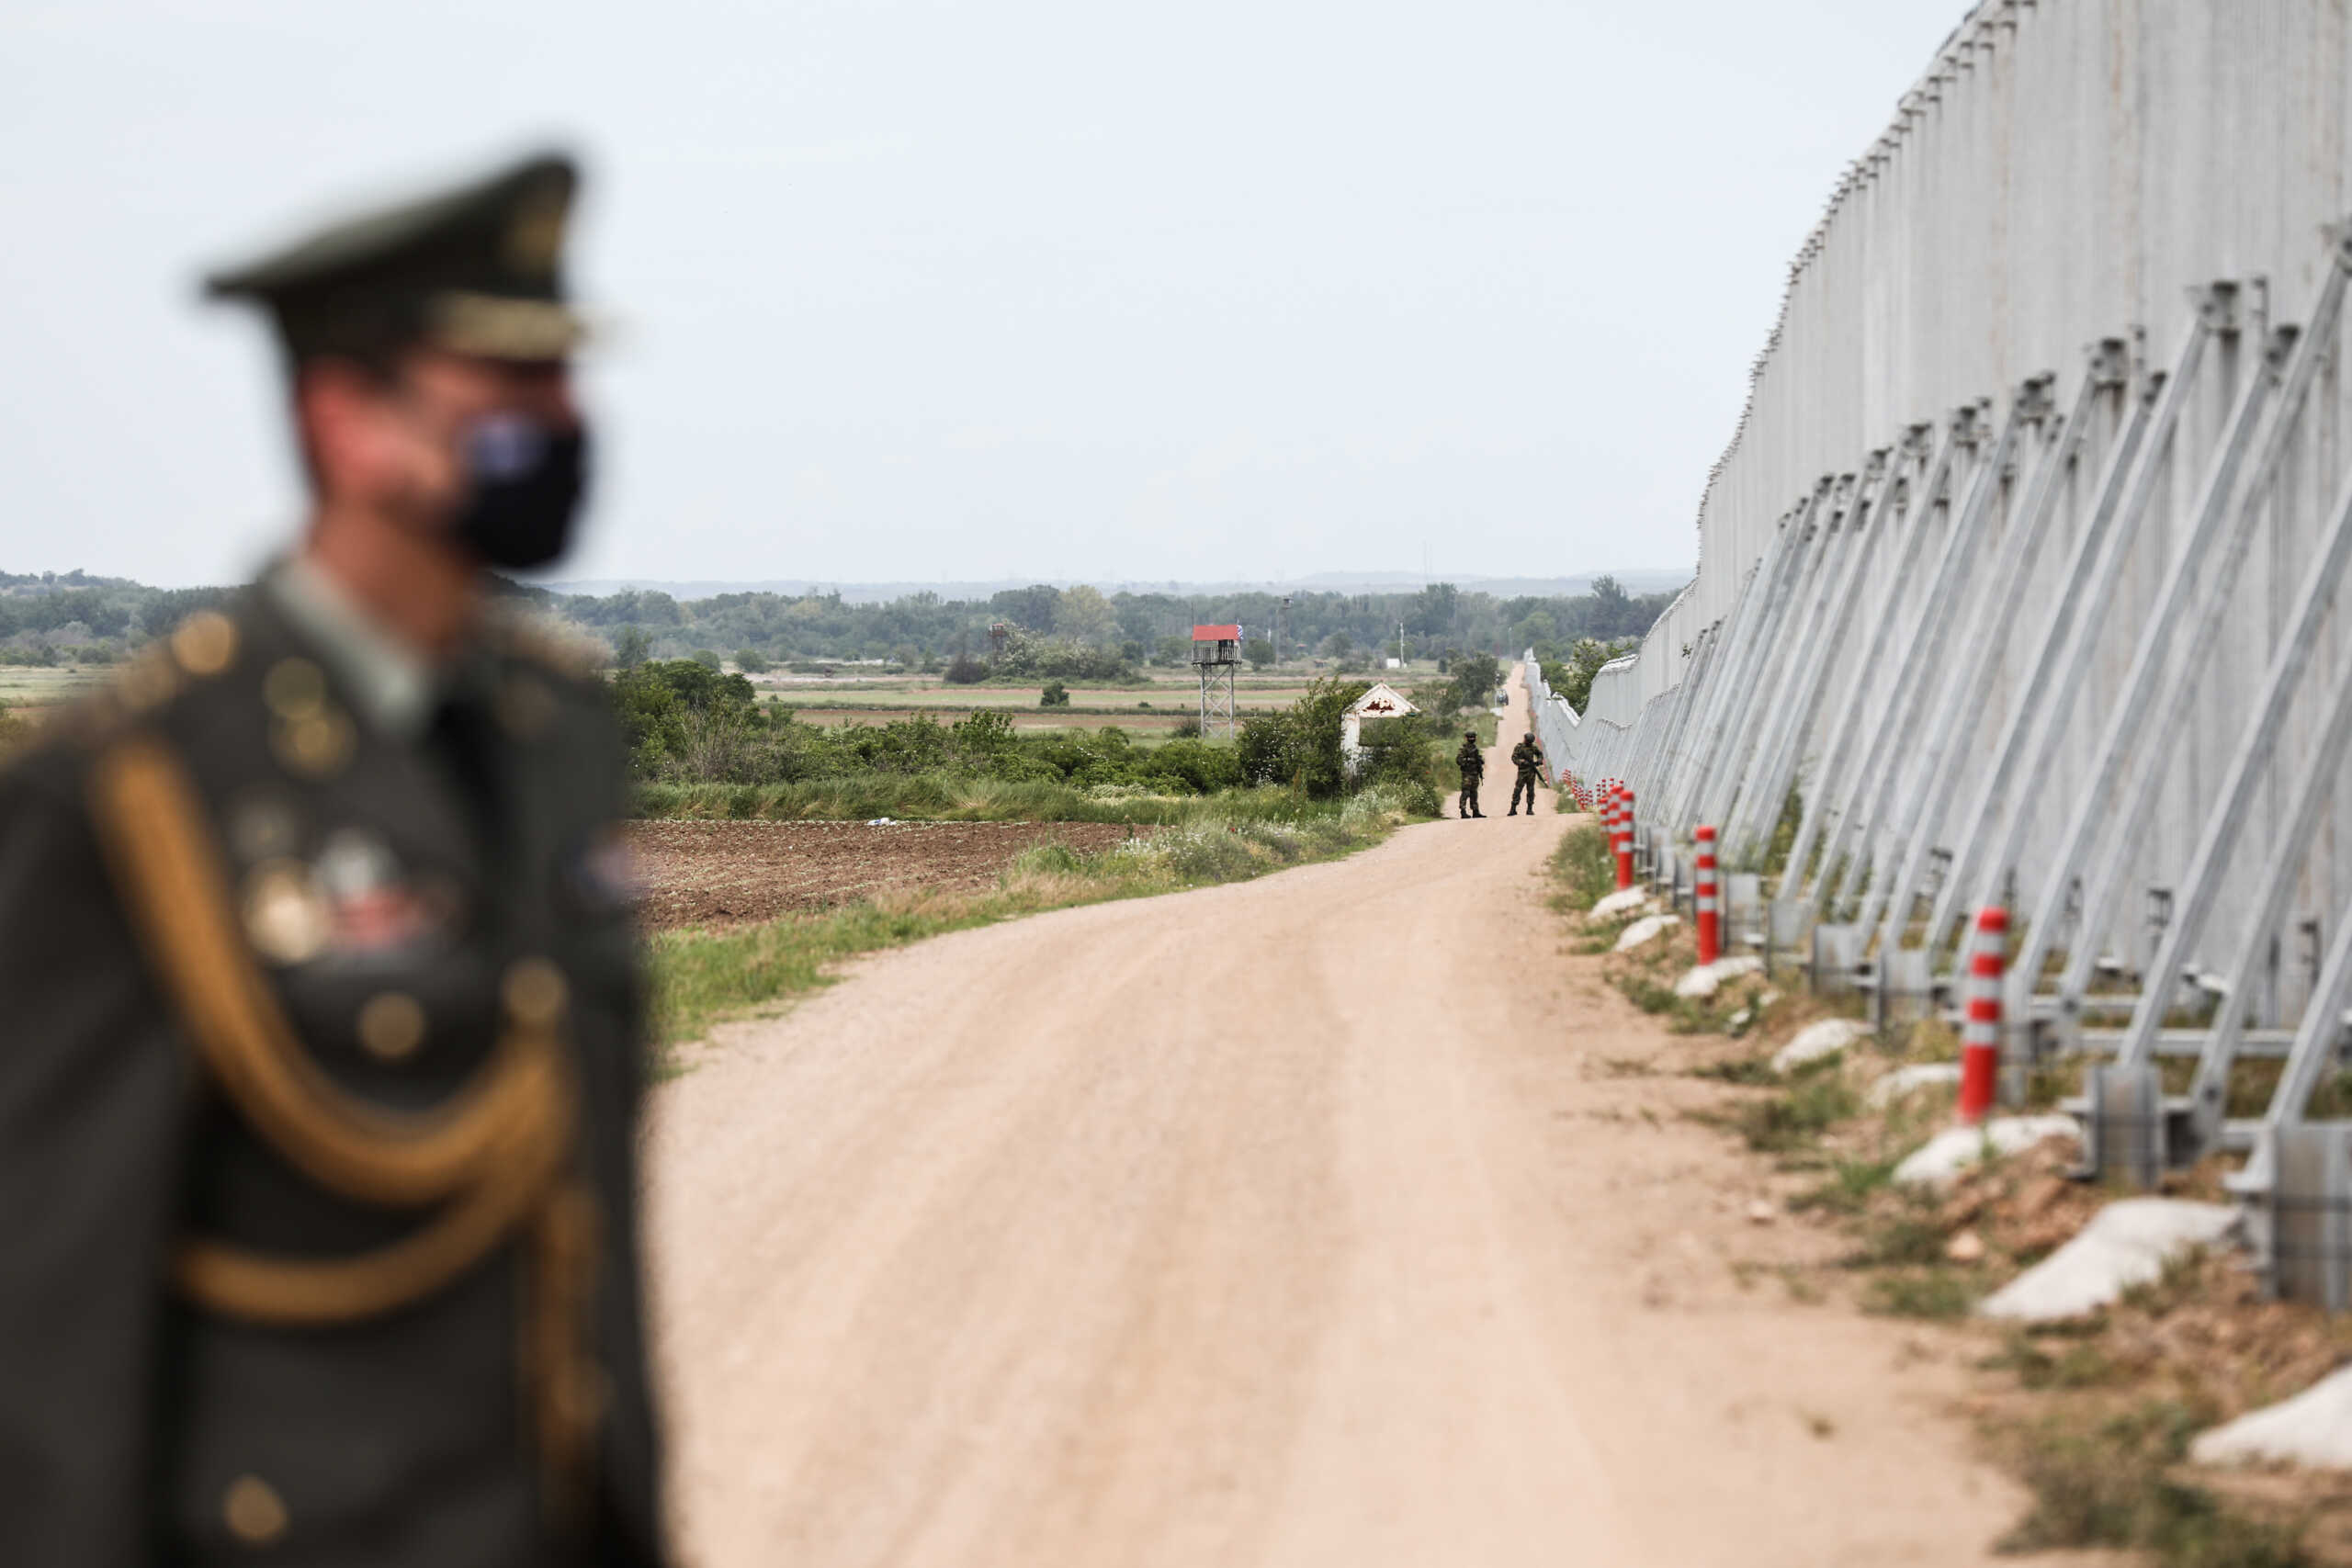 Μάνφρεντ Βέμπερ: Η Ευρωπαϊκή επιτροπή να χρηματοδοτεί φράχτες στα σύνορα όταν είναι απαραίτητο